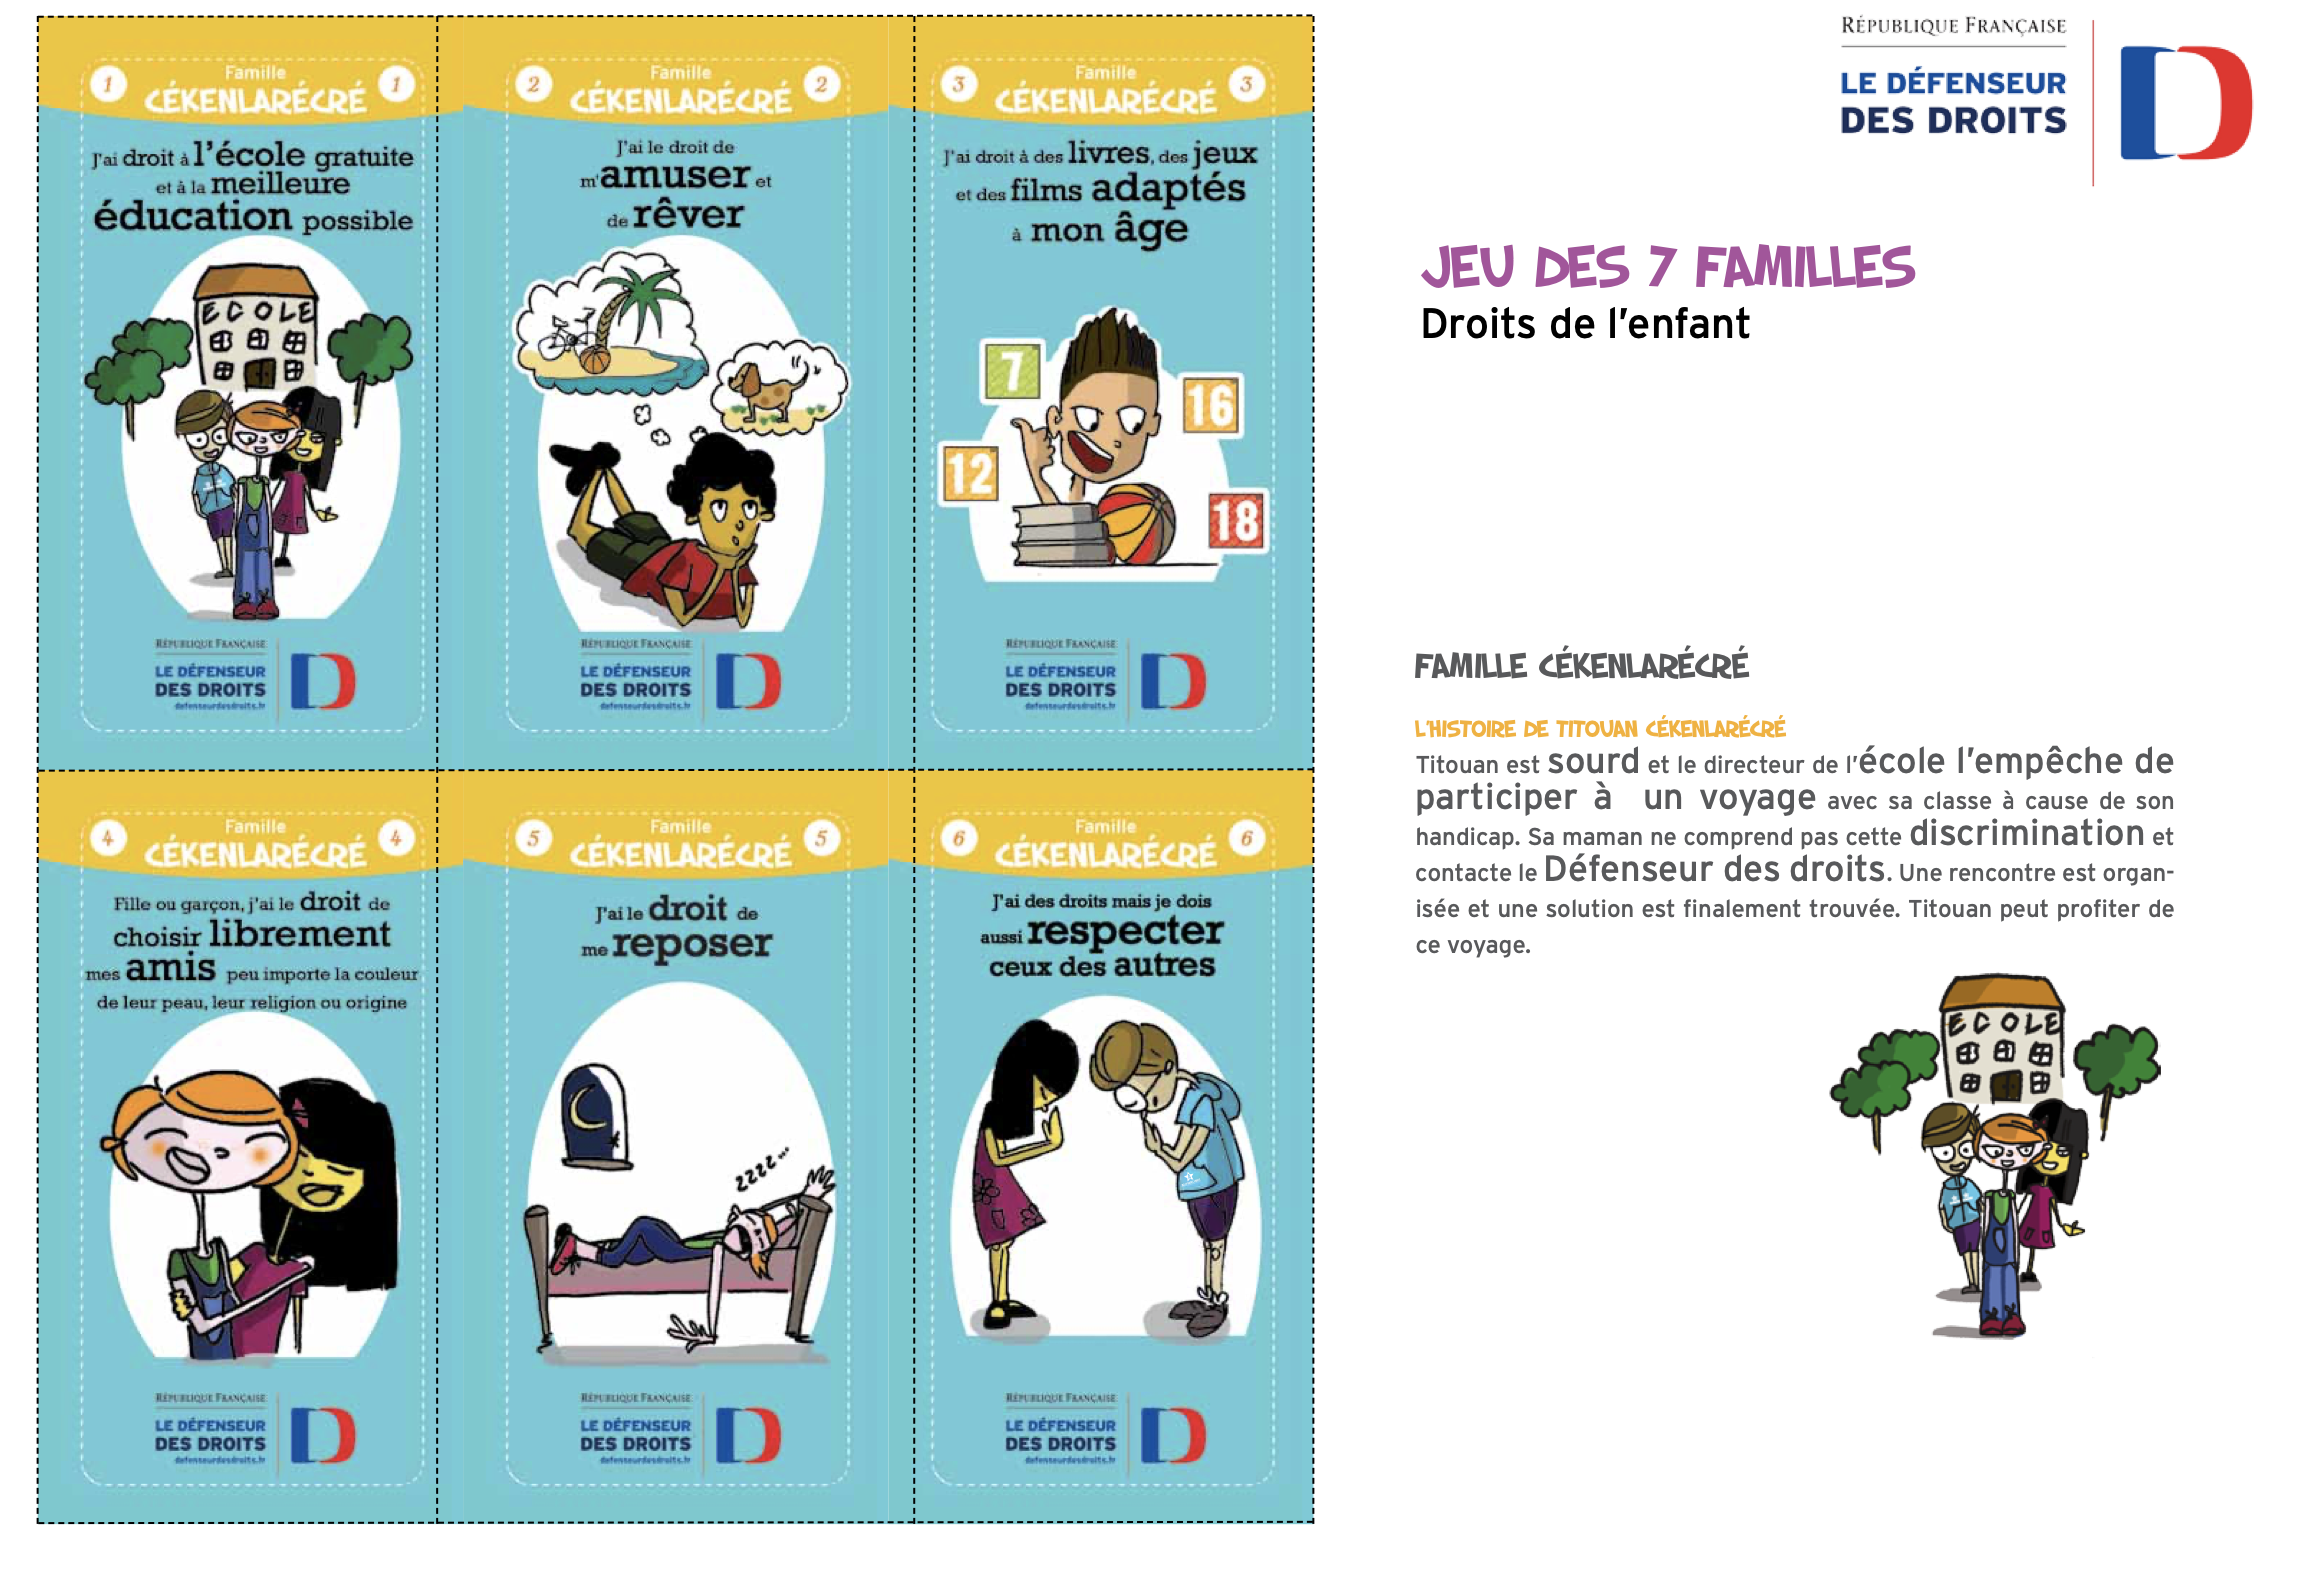 Jeu des 7 familles des DROITS DE L'ENFANT gratuit à télécharger - 42 cartes  + brochure (Défenseur des Droits) - Site de labophilo !